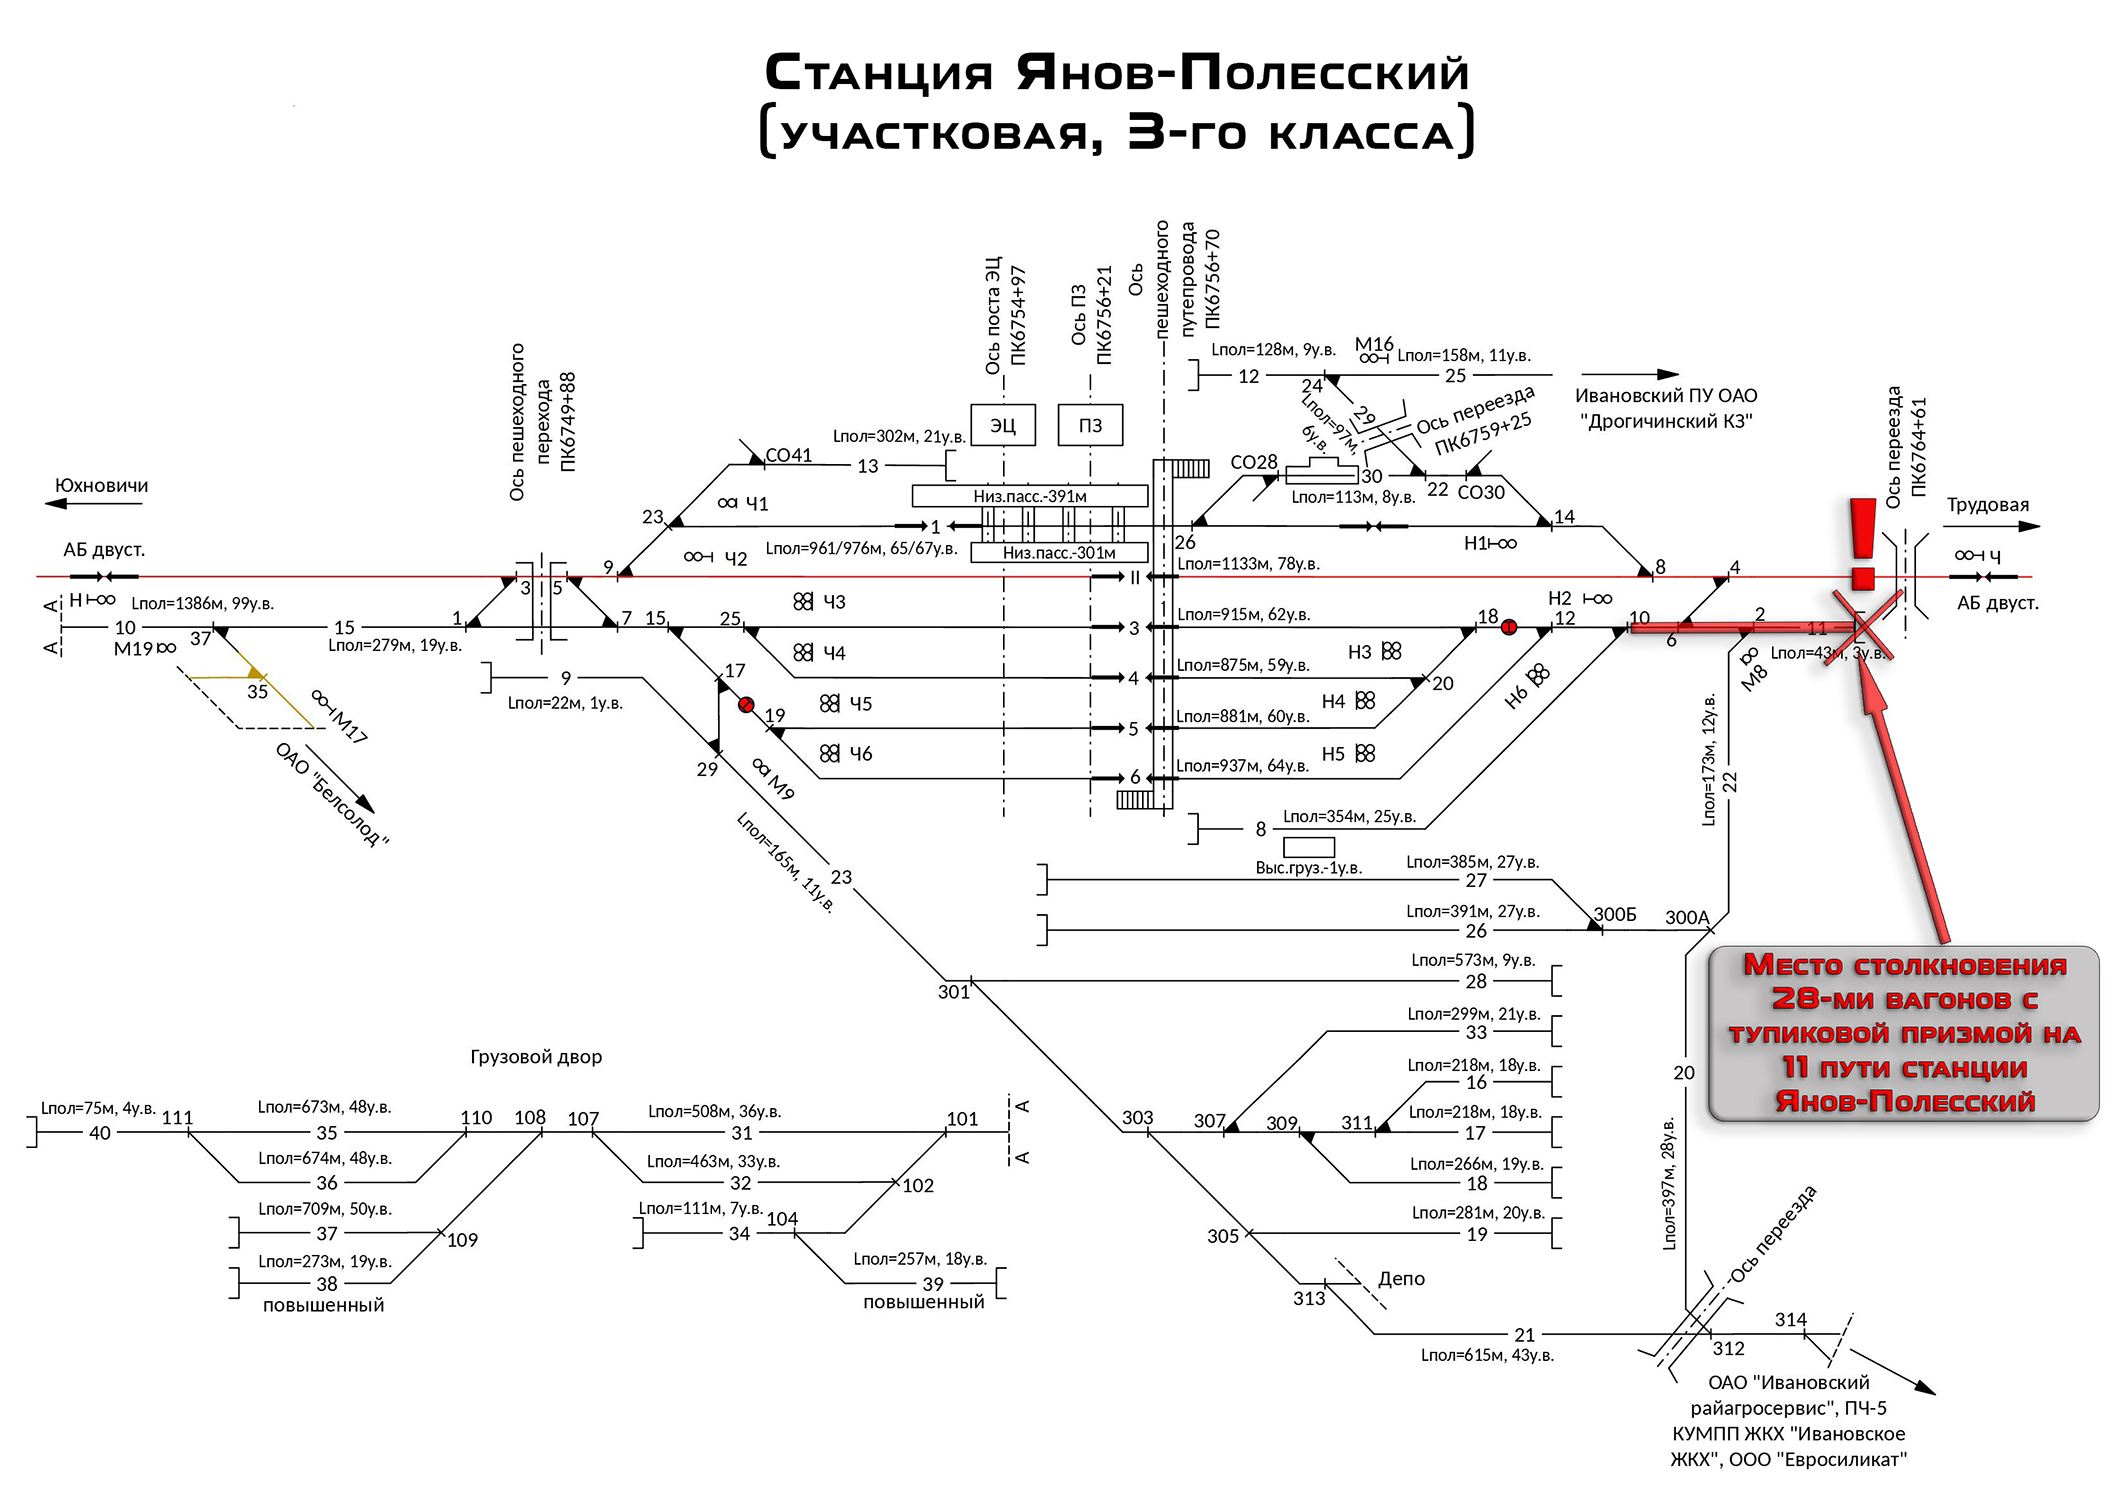 Схема станции Янов-Полесский (Брестское отделение БЖД)